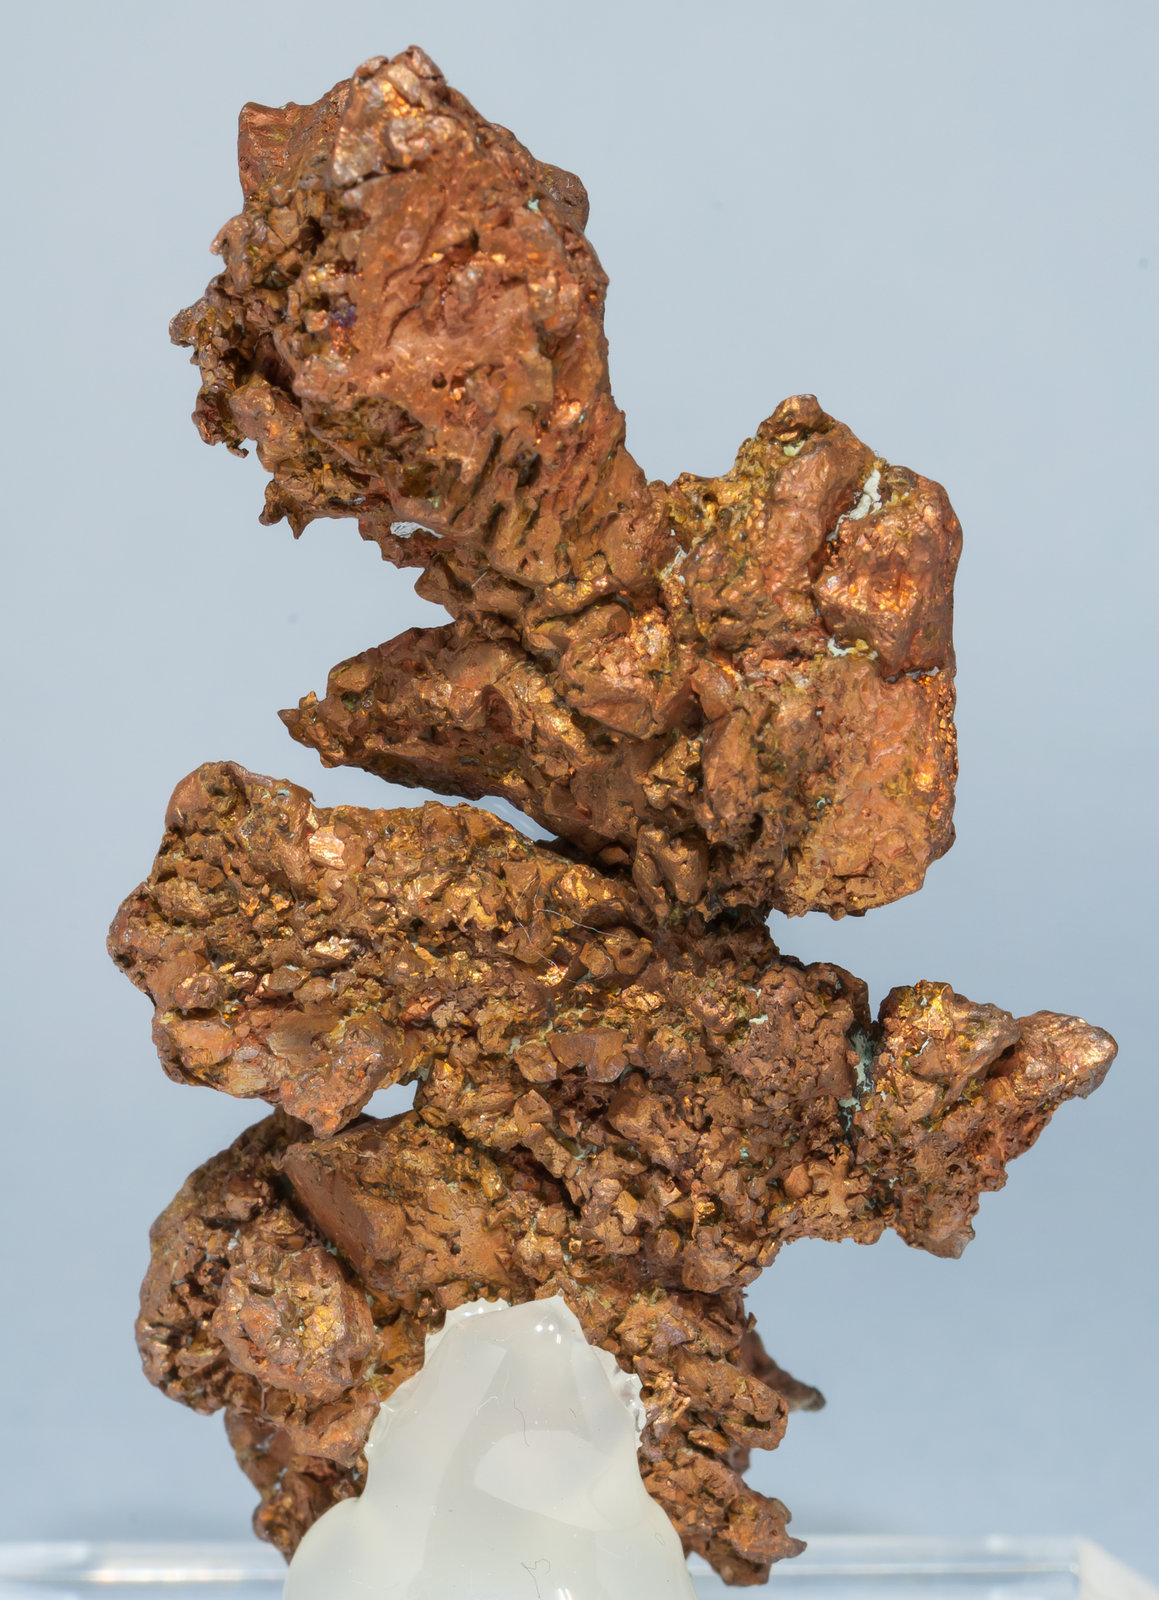 specimens/s_imagesAE8/Copper-TA76AE8r.jpg